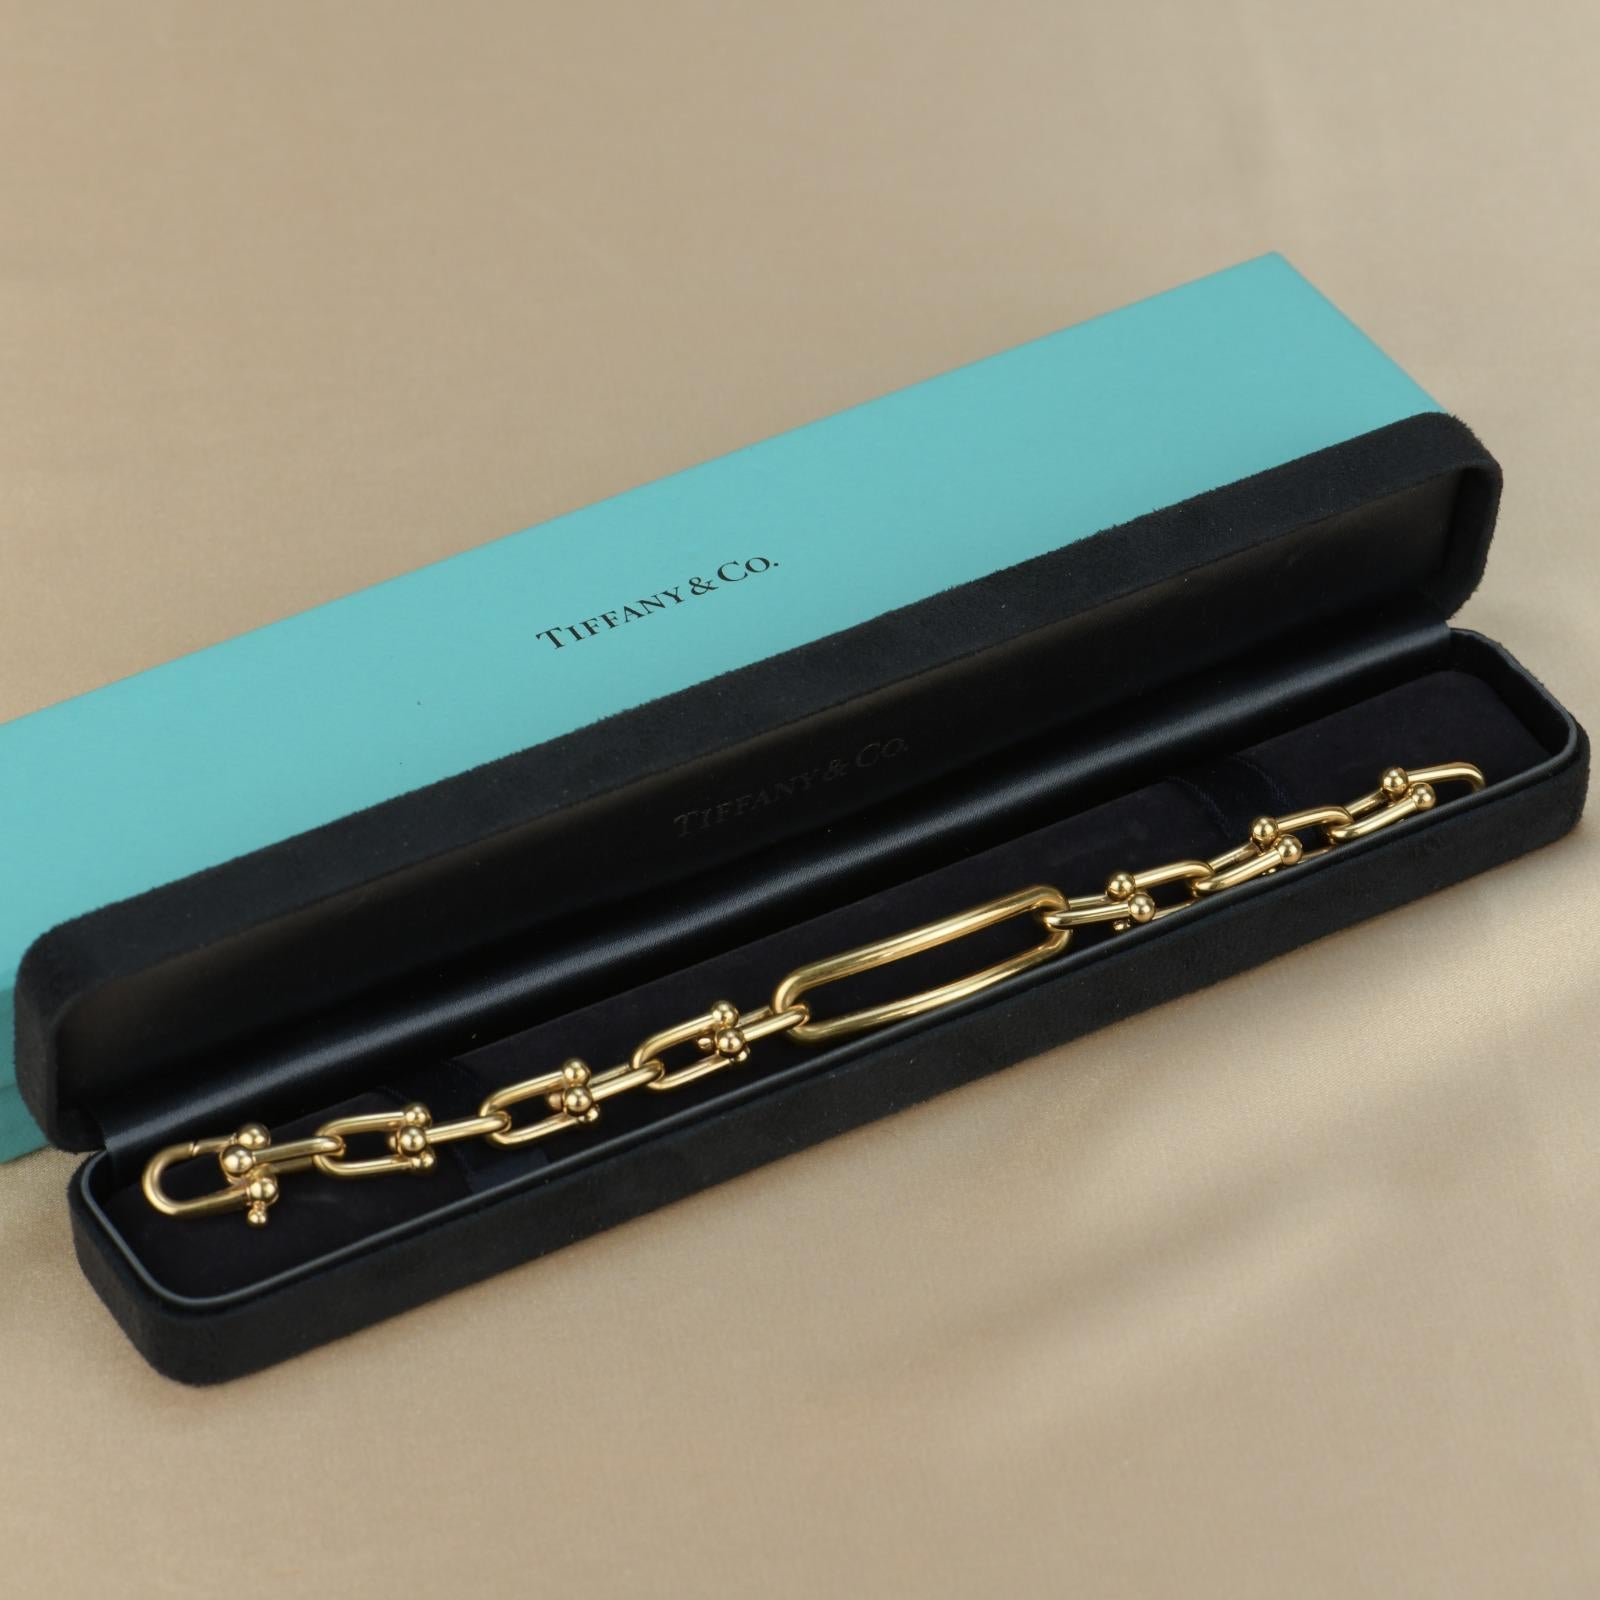 Verkaufspreis £5575
Datum   Ca. 2020
__________________________________
Metall 18K Gelbgold
Länge ca. 18,8 cm
__________________________________
Condit ausgezeichnet
Kommt mit Tiffany Box / Dandelion Antiques Authentic Guarantee